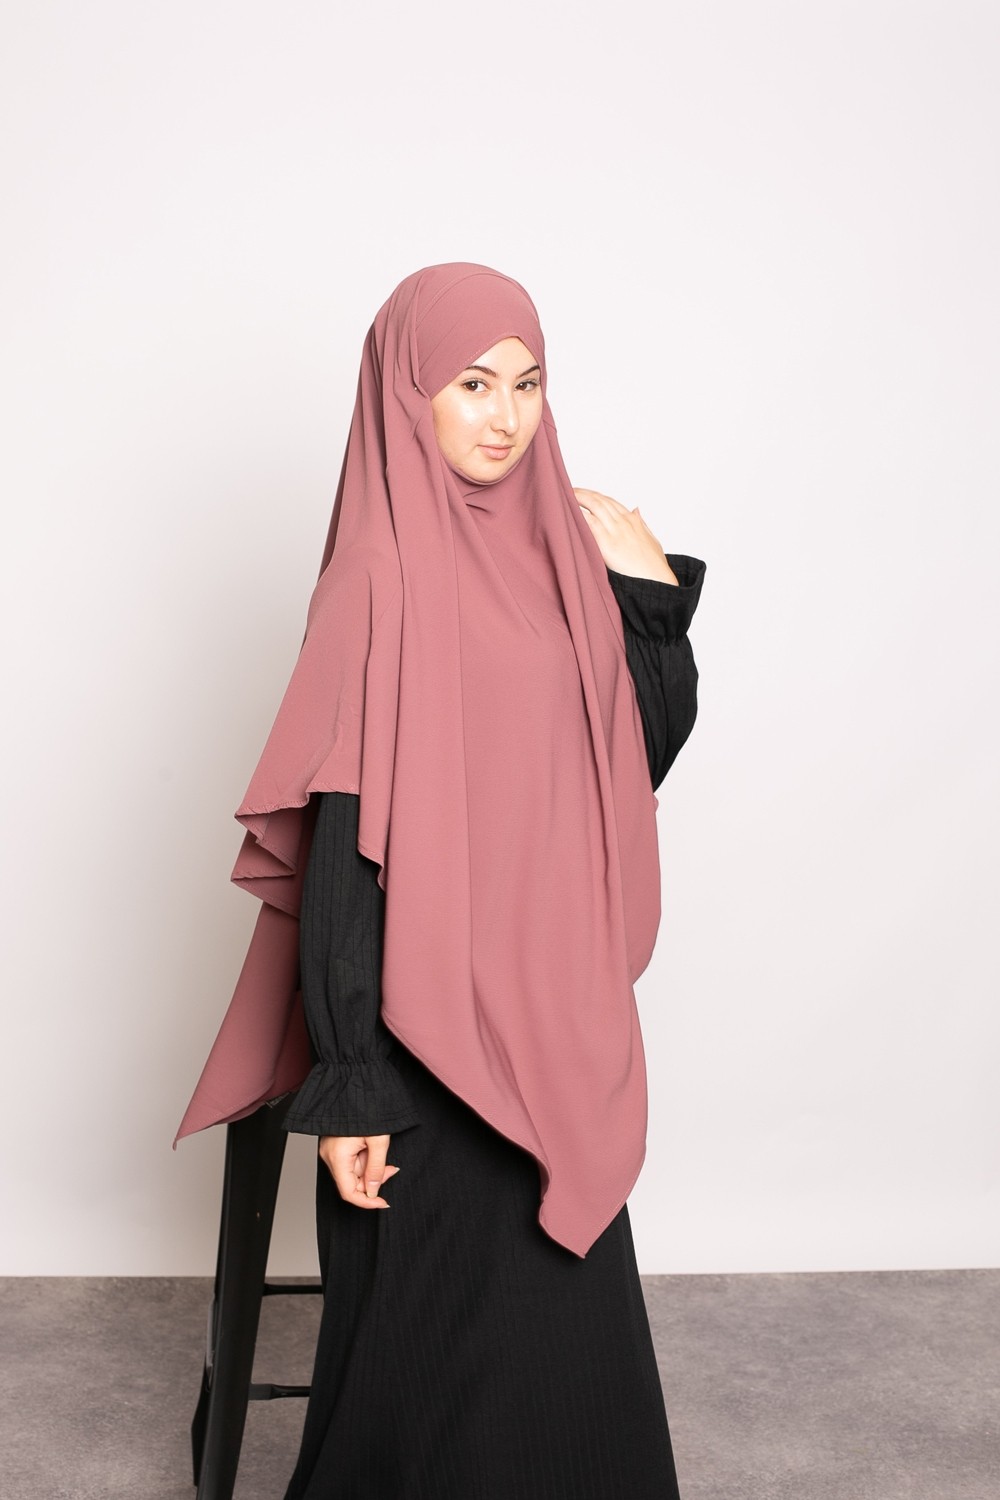 Khimar soie de médine prune prêt à porter pour femme musulmane hijab shop modeste fashion